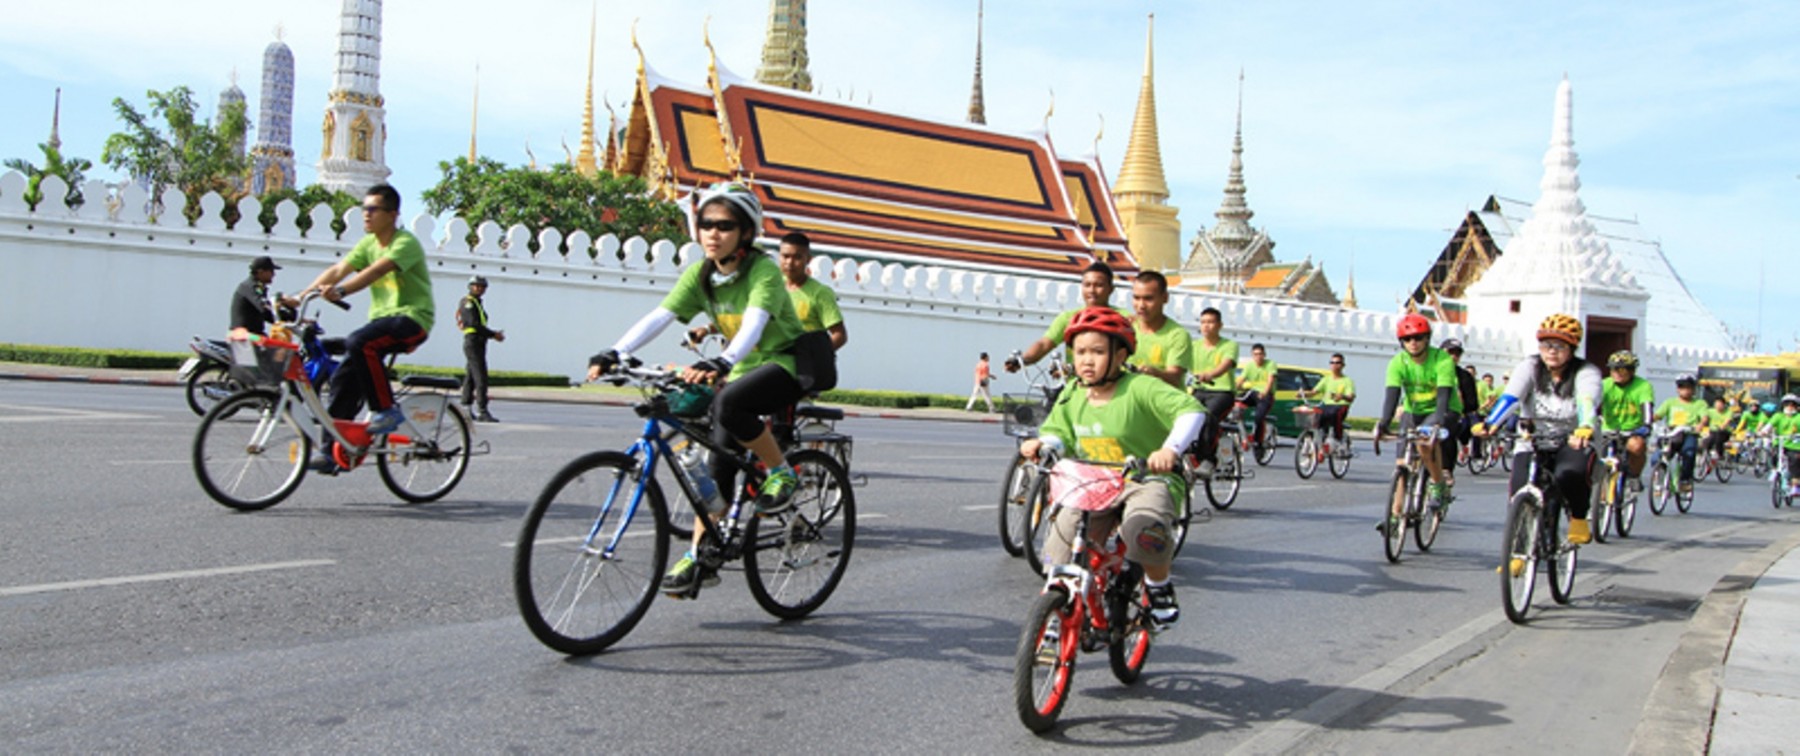 follow-me-bangkok-bicycle-tours